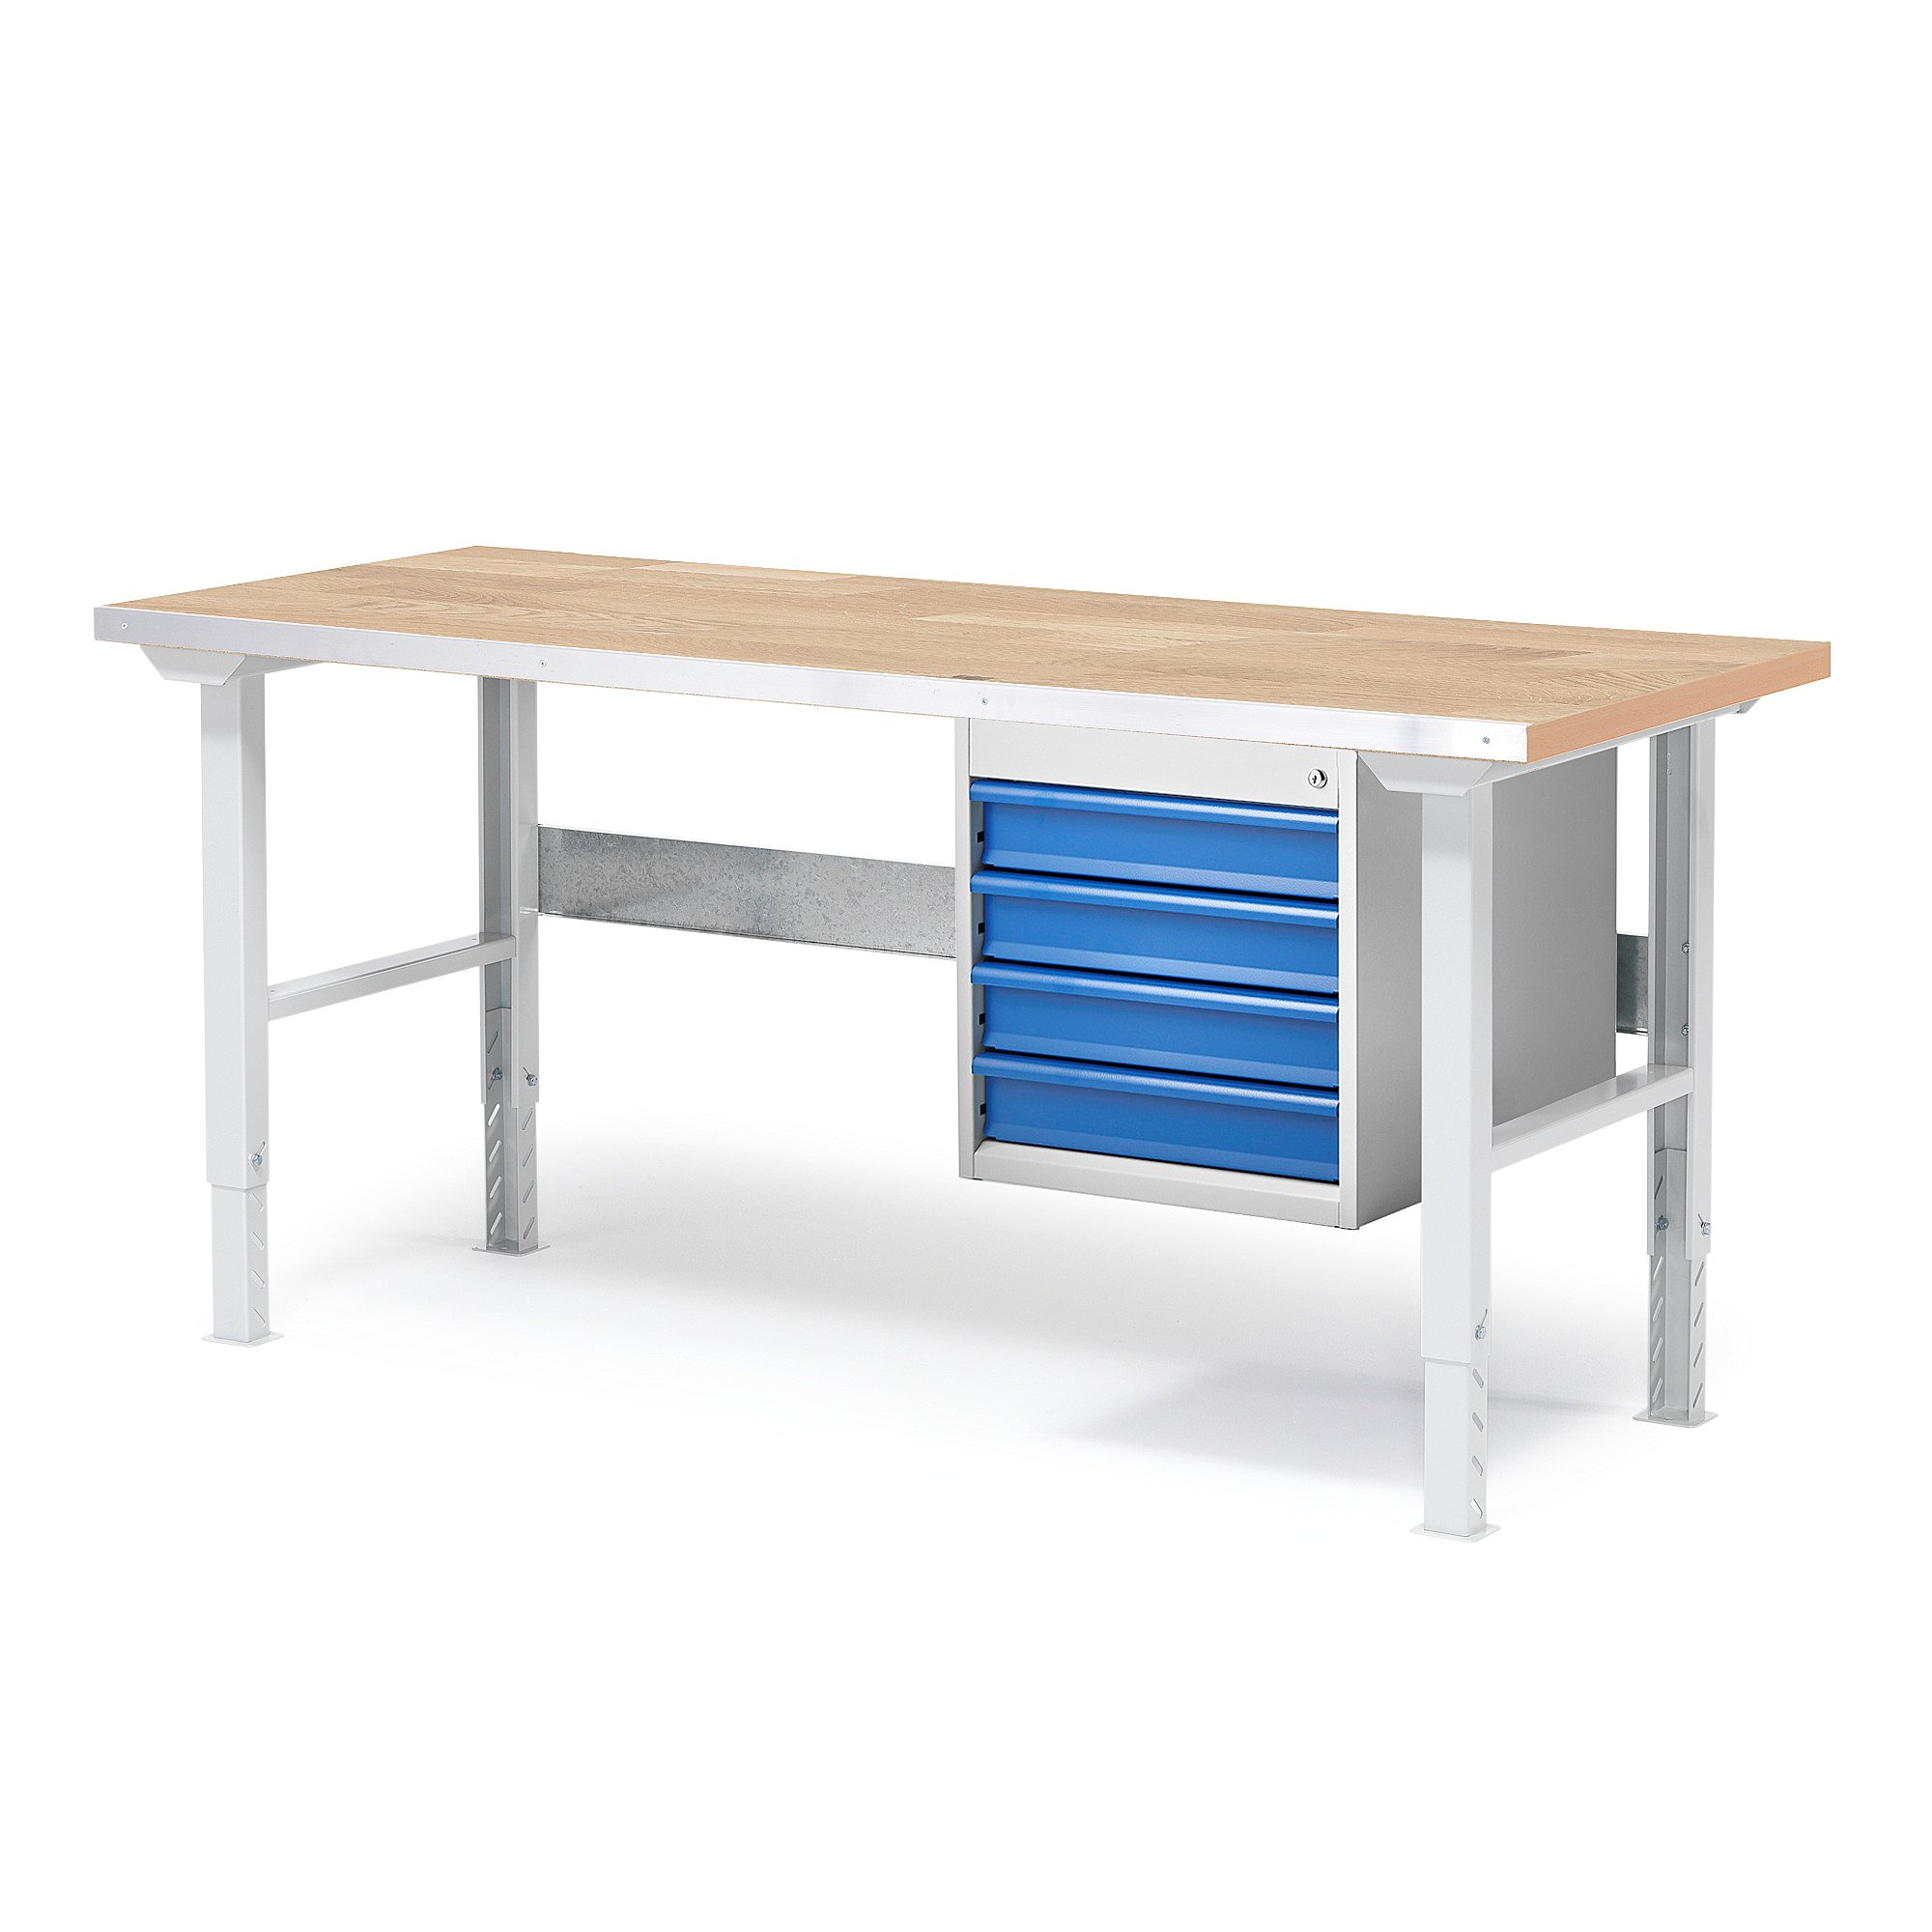 Dílenský stůl SOLID, 1500x800 mm, nosnost 750 kg, 4 zásuvky, dubový povrch